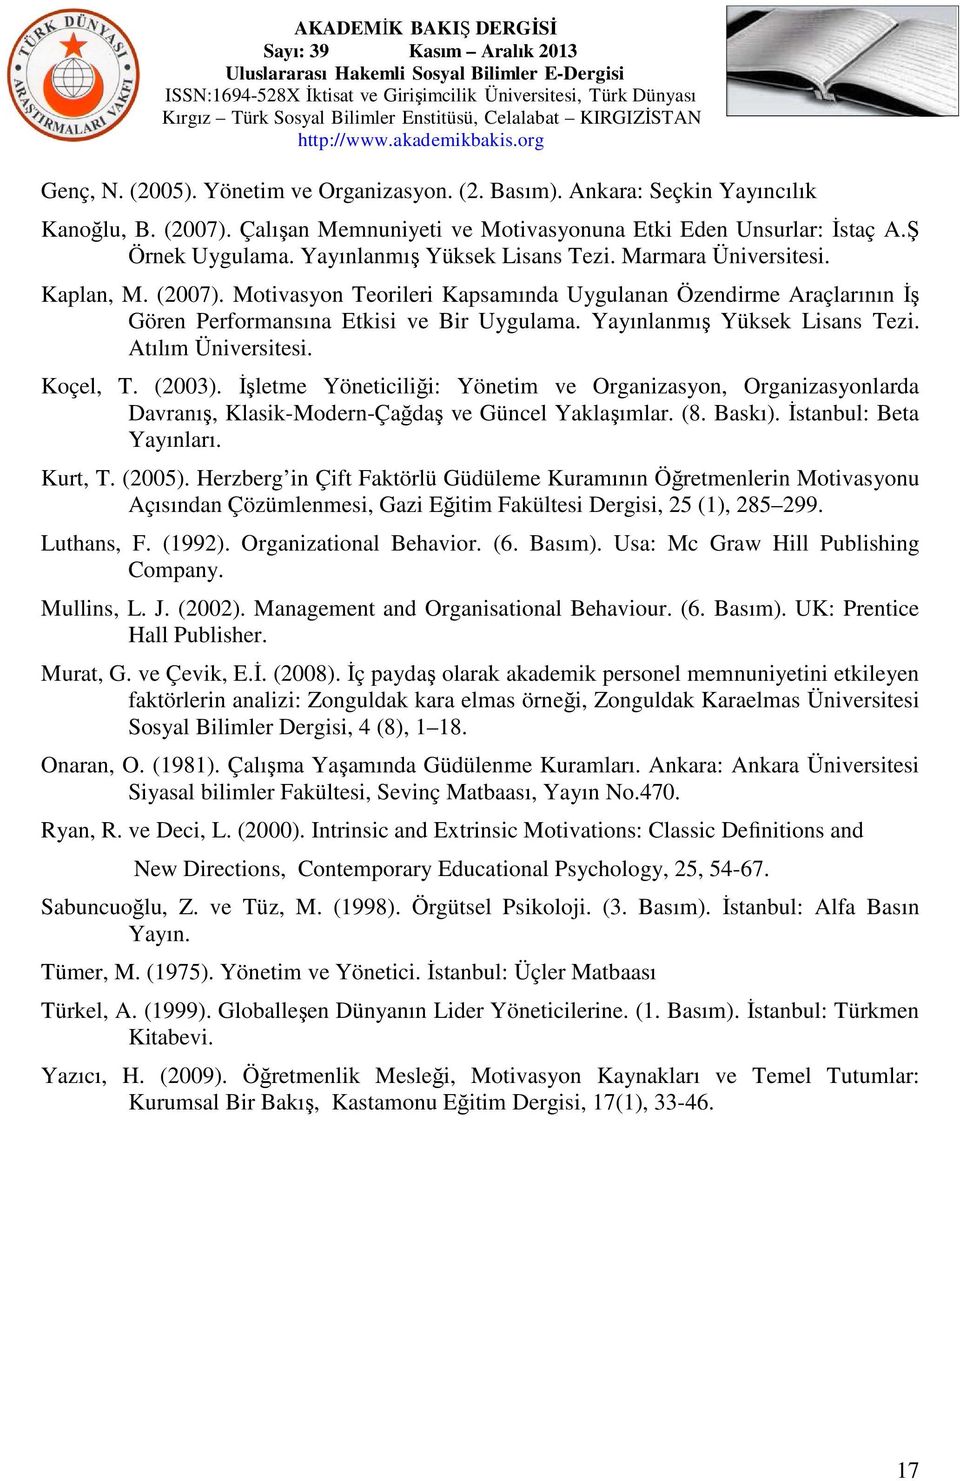 Yayınlanmış Yüksek Lisans Tezi. Atılım Üniversitesi. Koçel, T. (2003). İşletme Yöneticiliği: Yönetim ve Organizasyon, Organizasyonlarda Davranış, Klasik-Modern-Çağdaş ve Güncel Yaklaşımlar. (8.